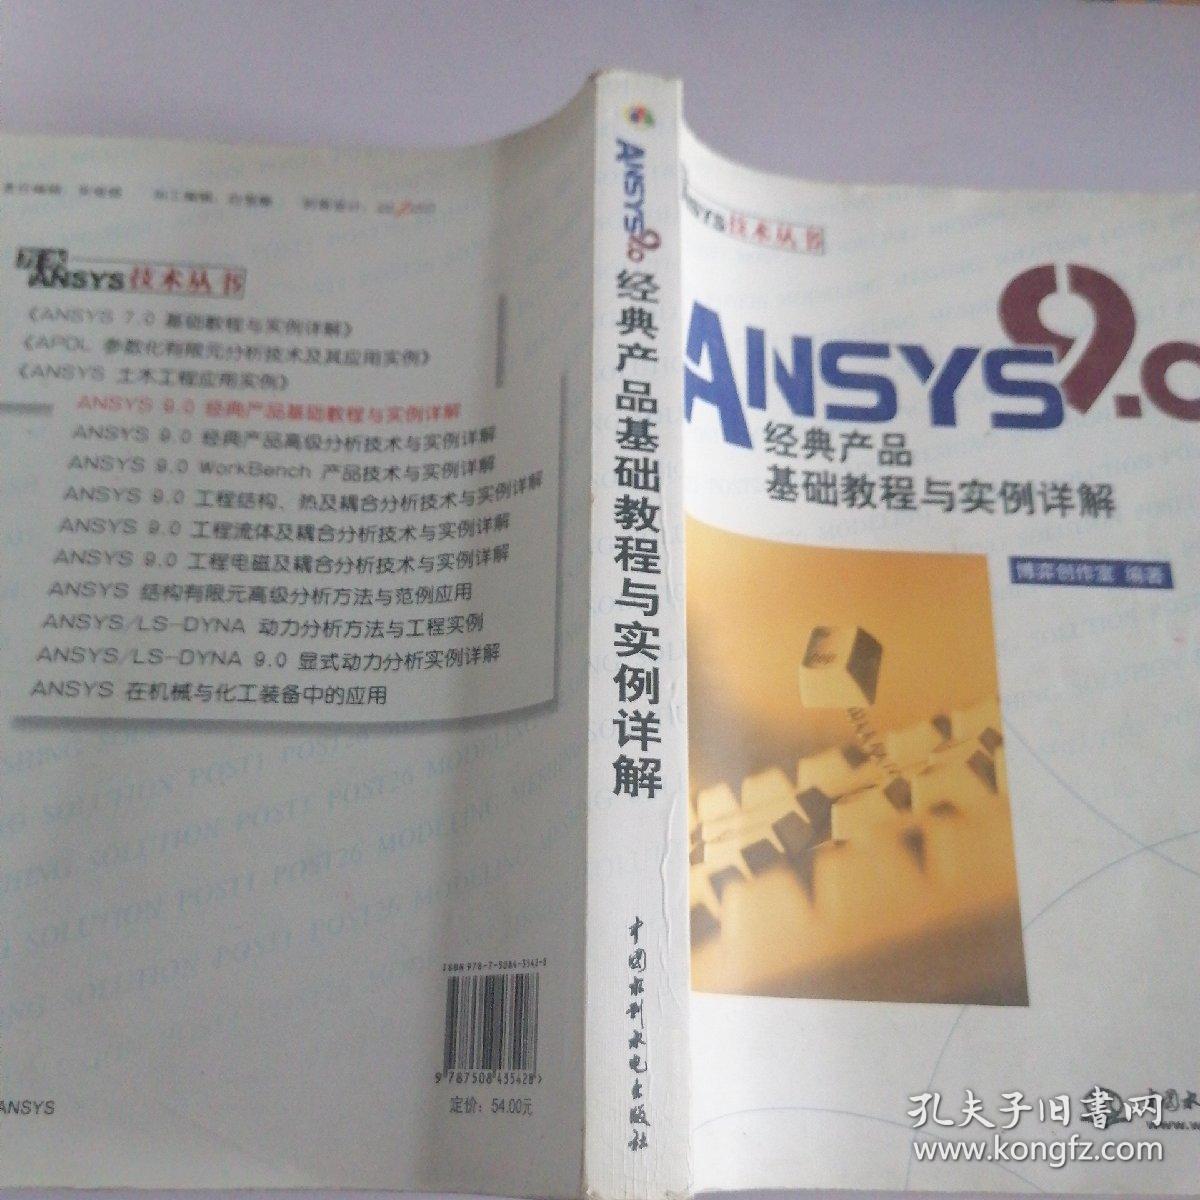 ANSYS 9.0经典产品基础教程与实例详解